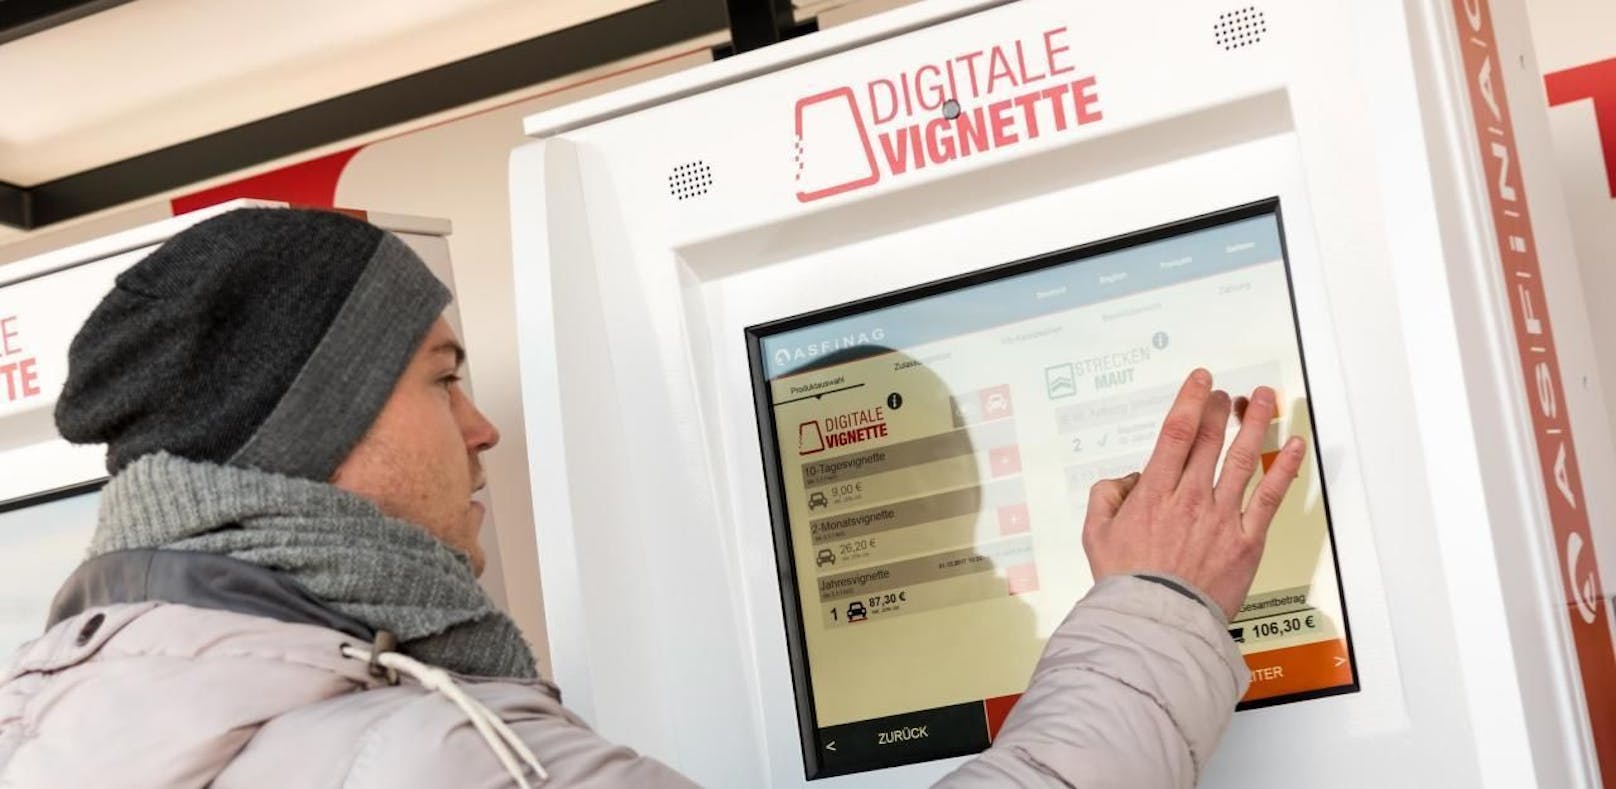 Symbolbild: Kauf einer digitalen Vignette bei einem Automaten in Hohenems.